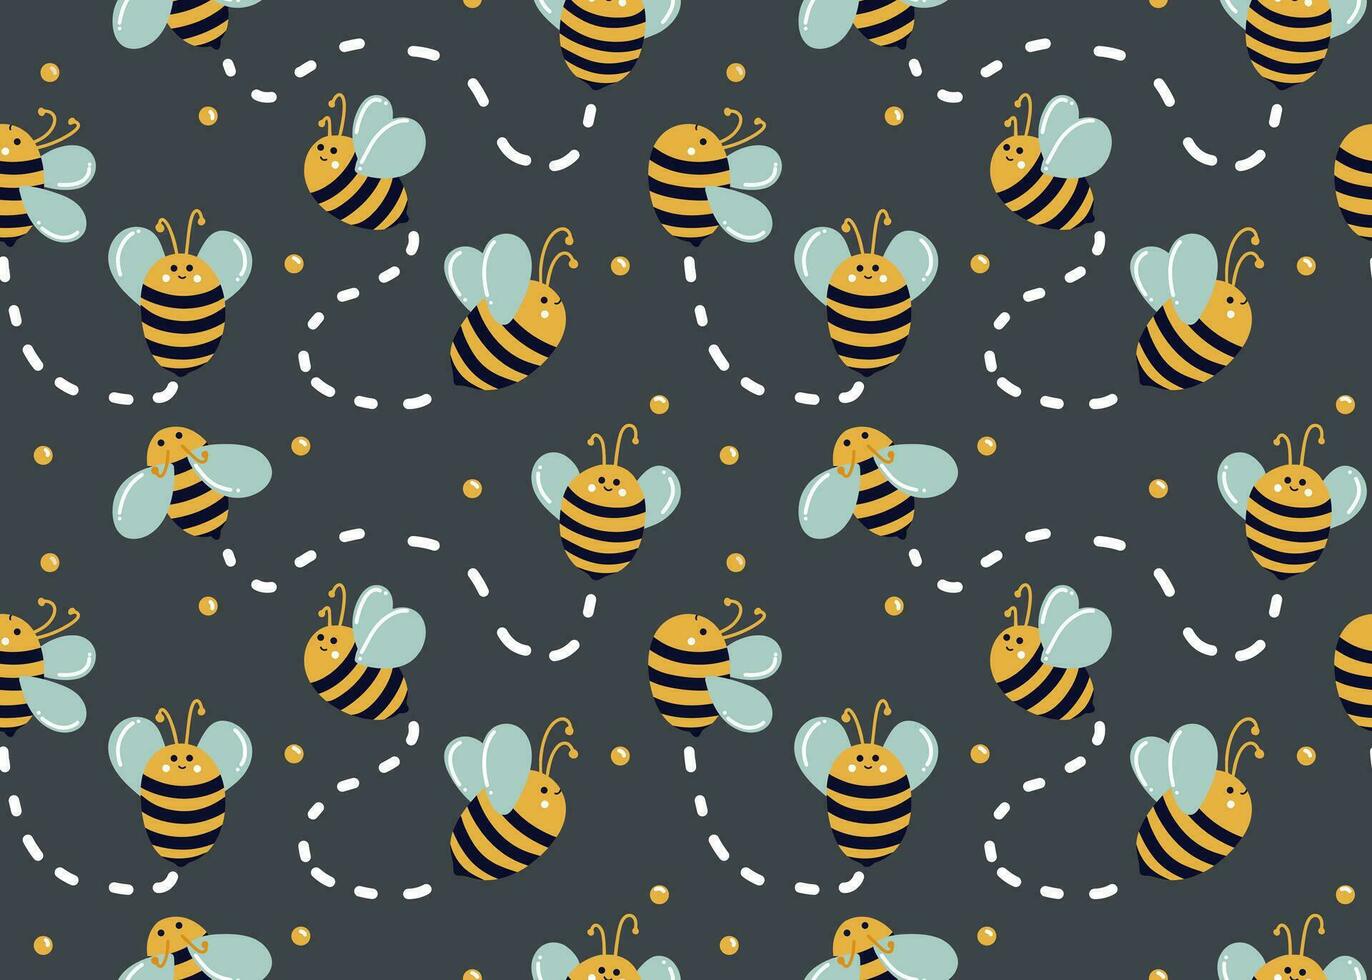 bin flytta i annorlunda vägbeskrivning på blå bakgrund med honung droppar och rader av rörelse. söt bin. sömlös bi mönster för ungar. sommar mönster för tyger, säng Linné, dekor vektor